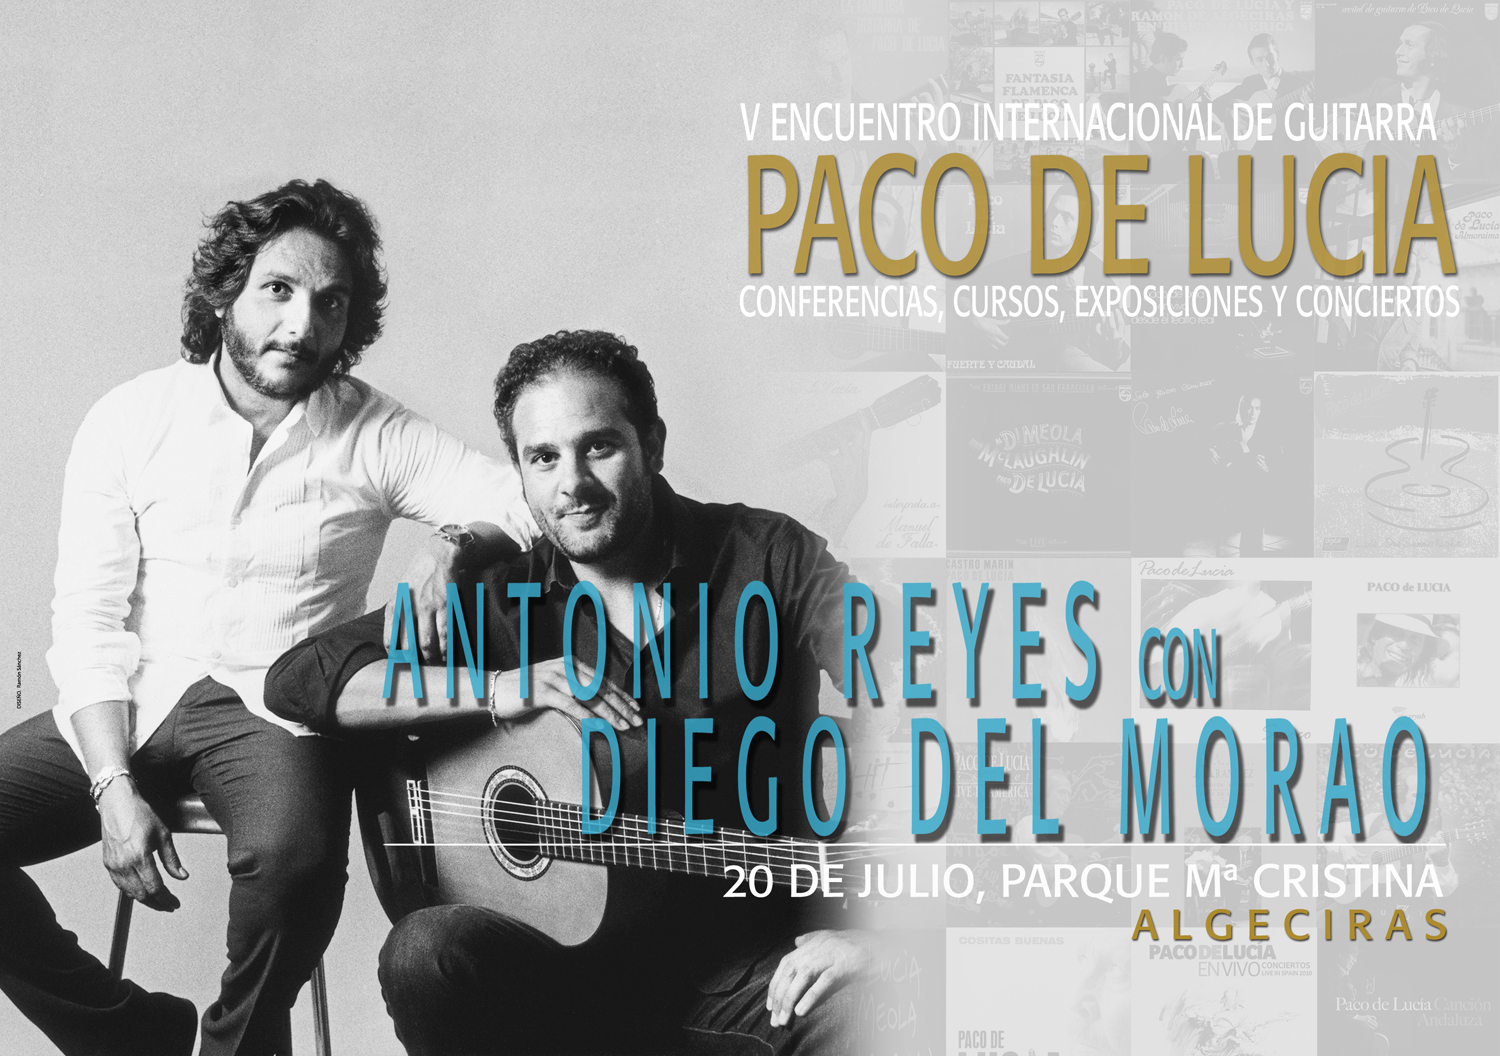 Antonio Reyes & Diego del Morao & Farruquito- Encuentro Paco de Lucía